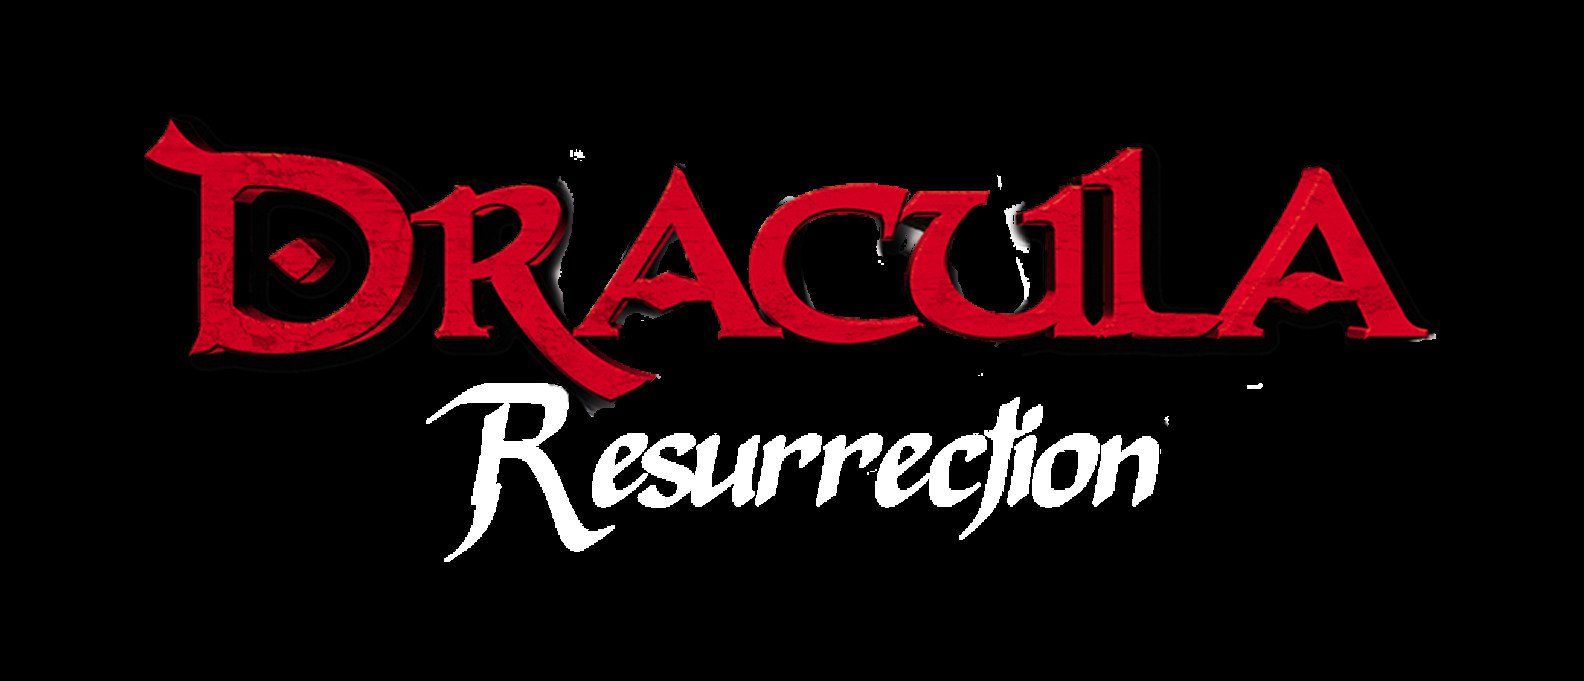 Dracula The Resurrection 9